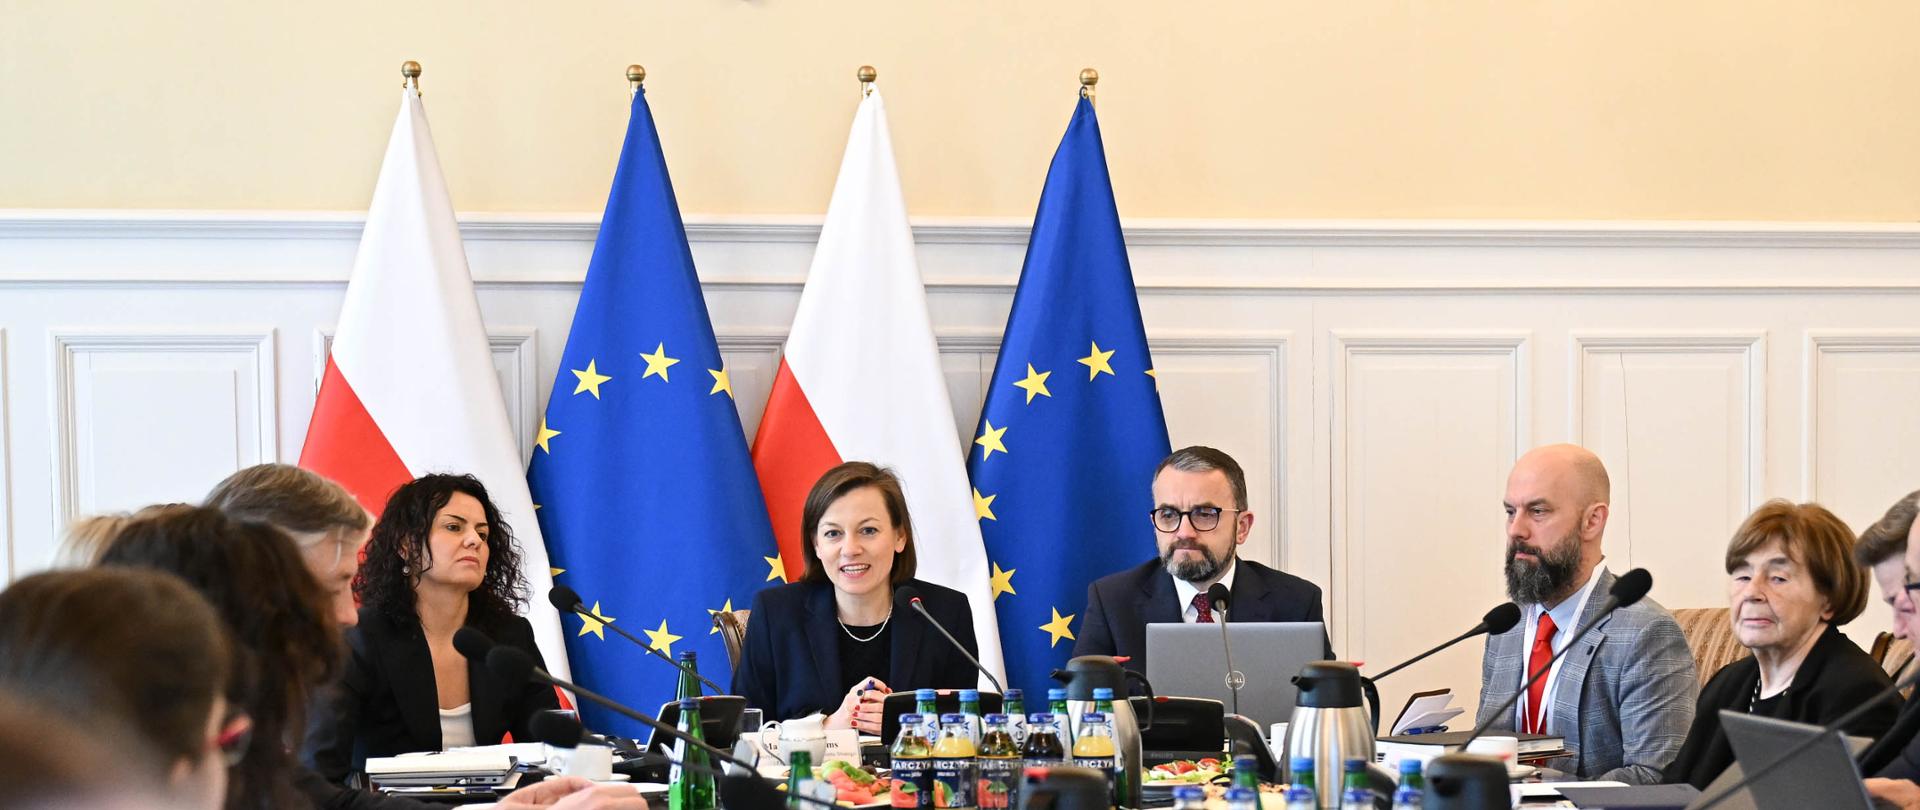 Wiceministra Zuzanna Rudzińska-Bluszcz na posiedzeniu Rady Nieodpłatnej Pomocy Prawnej, Nieodpłatnego Poradnictwa Obywatelskiego oraz Edukacji Prawnej